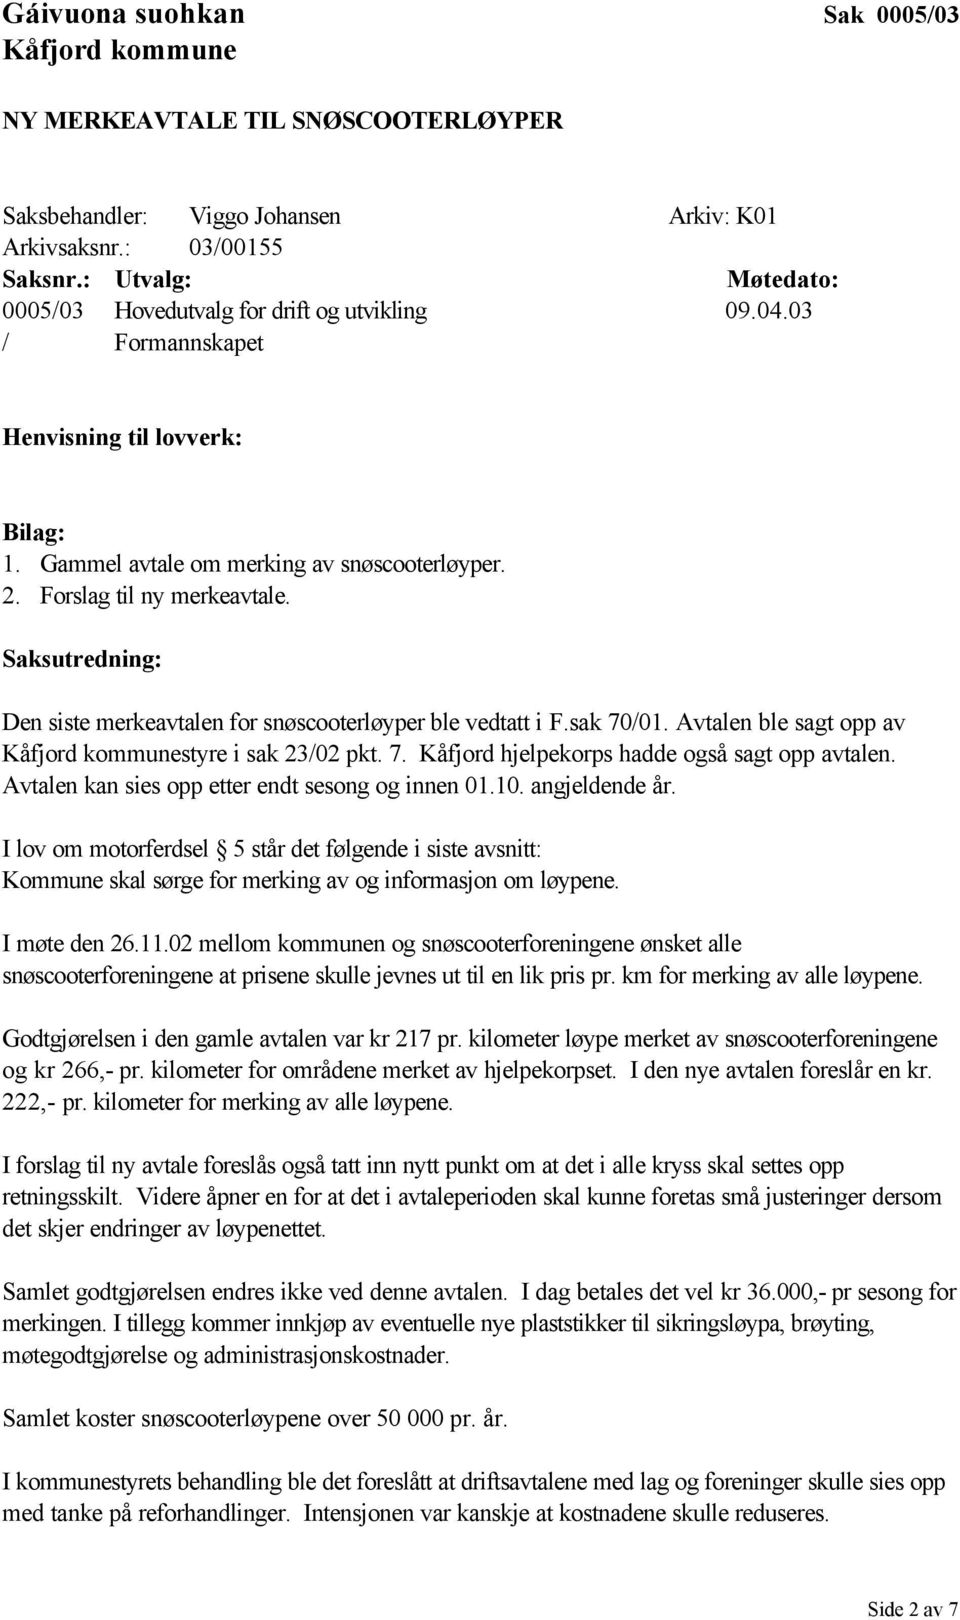 Saksutredning: Den siste merkeavtalen for snøscooterløyper ble vedtatt i F.sak 70/01. Avtalen ble sagt opp av styre i sak 23/02 pkt. 7. Kåfjord hjelpekorps hadde også sagt opp avtalen.